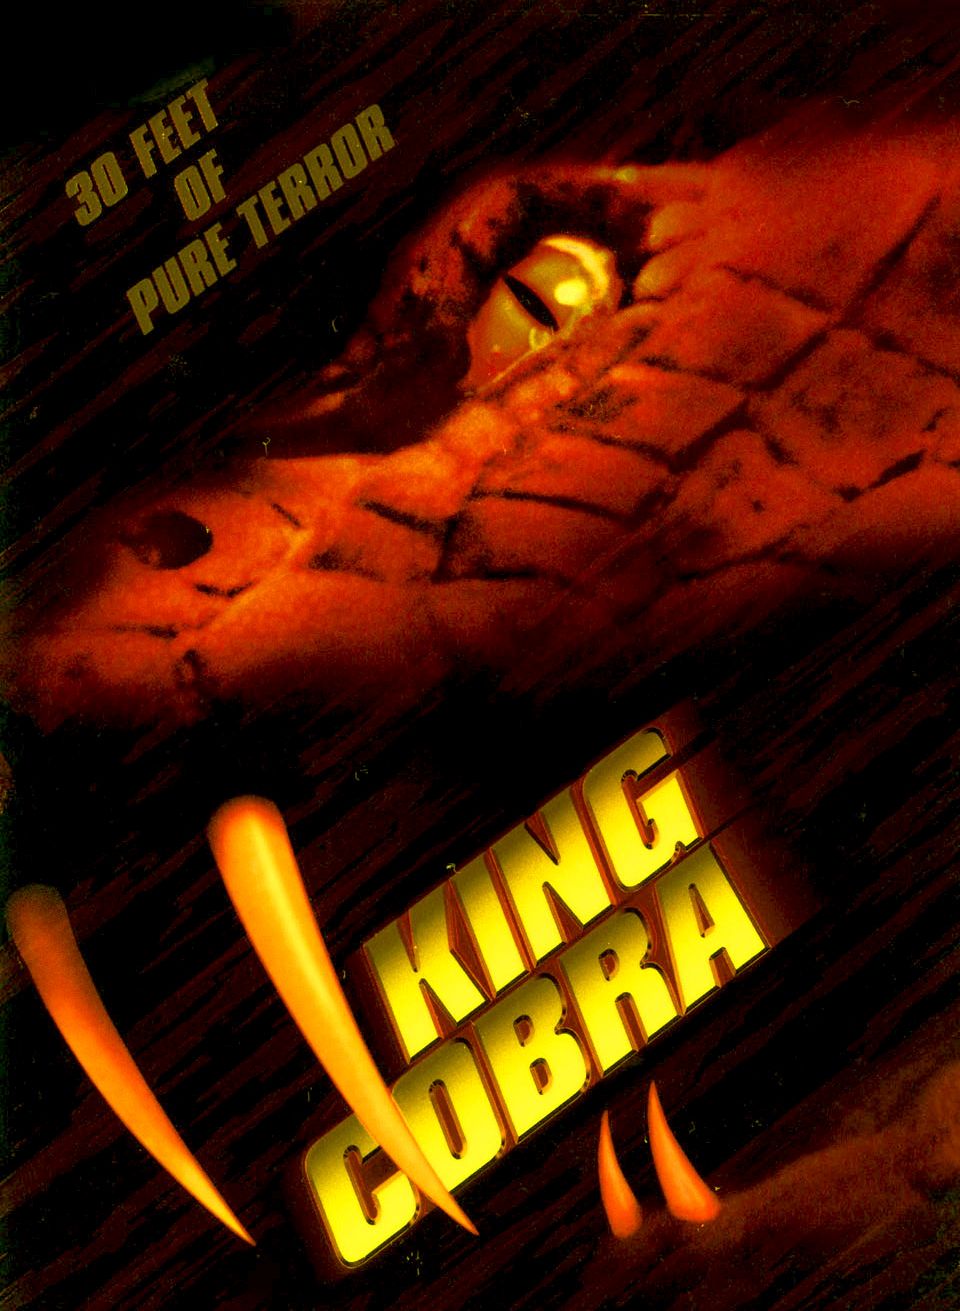 King Cobra Released in 1999